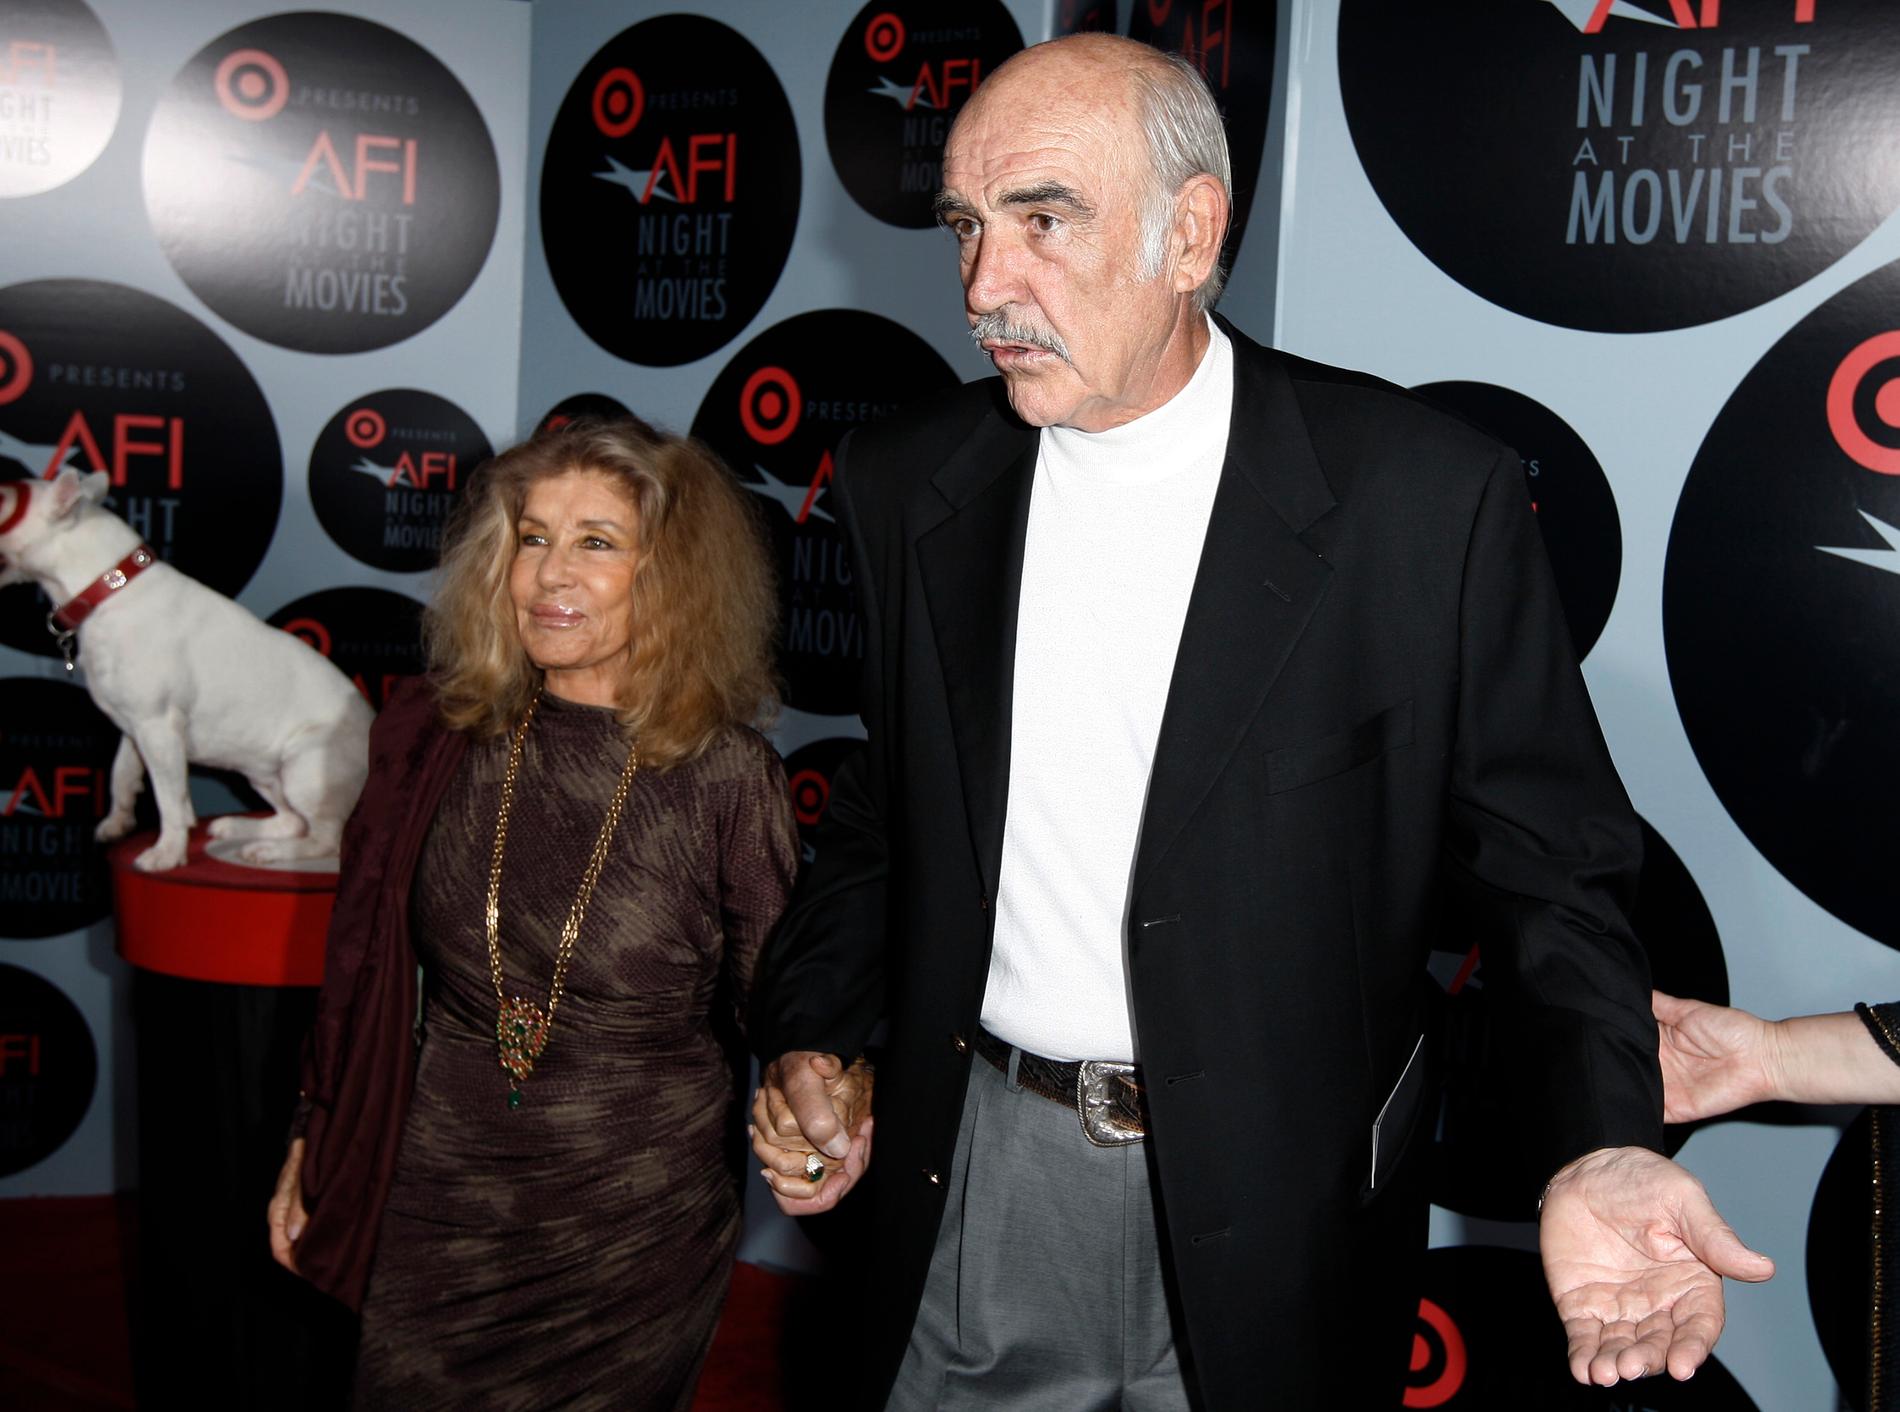 Sean Connery och Micheline Roquebrune på Target presents AFI night at the movies i Los Angeles onsdagen den 1 oktober 2008.